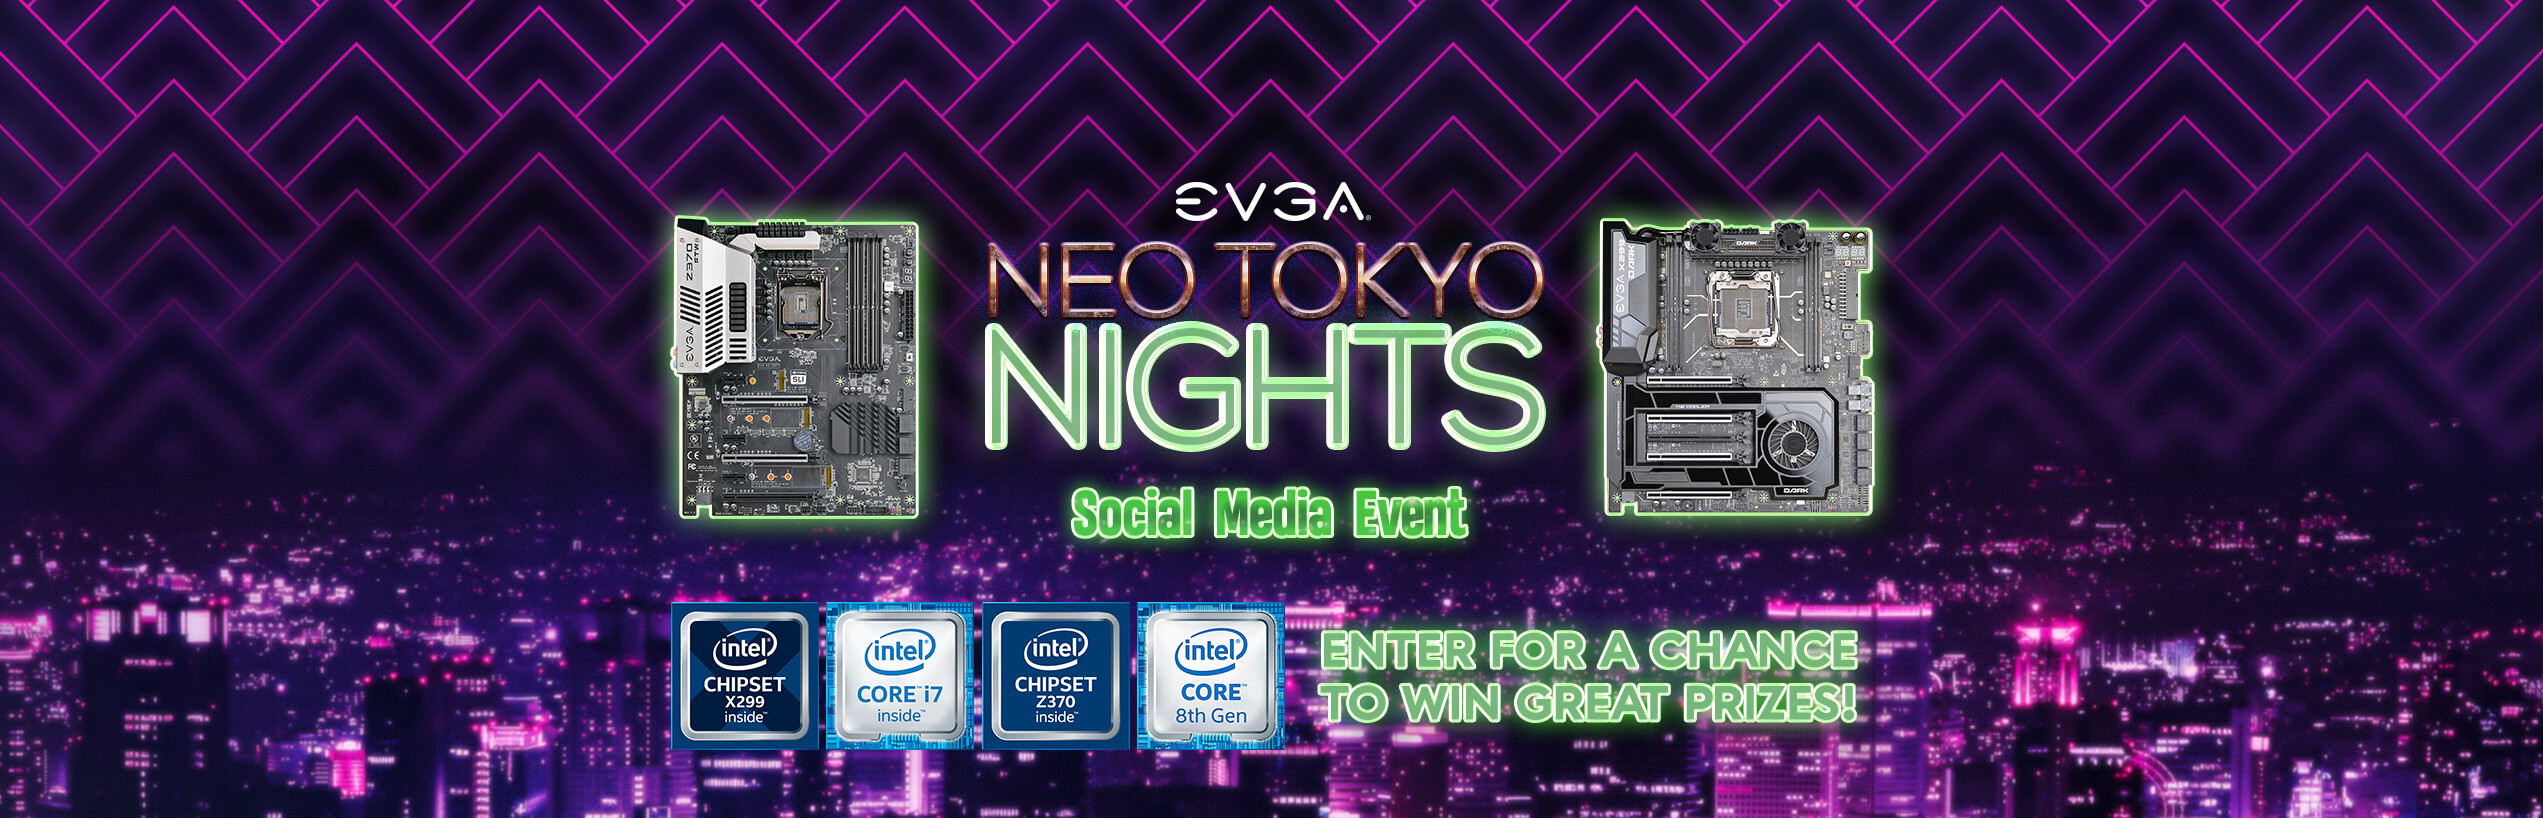 Neo Tokyo Nights Social Media Event